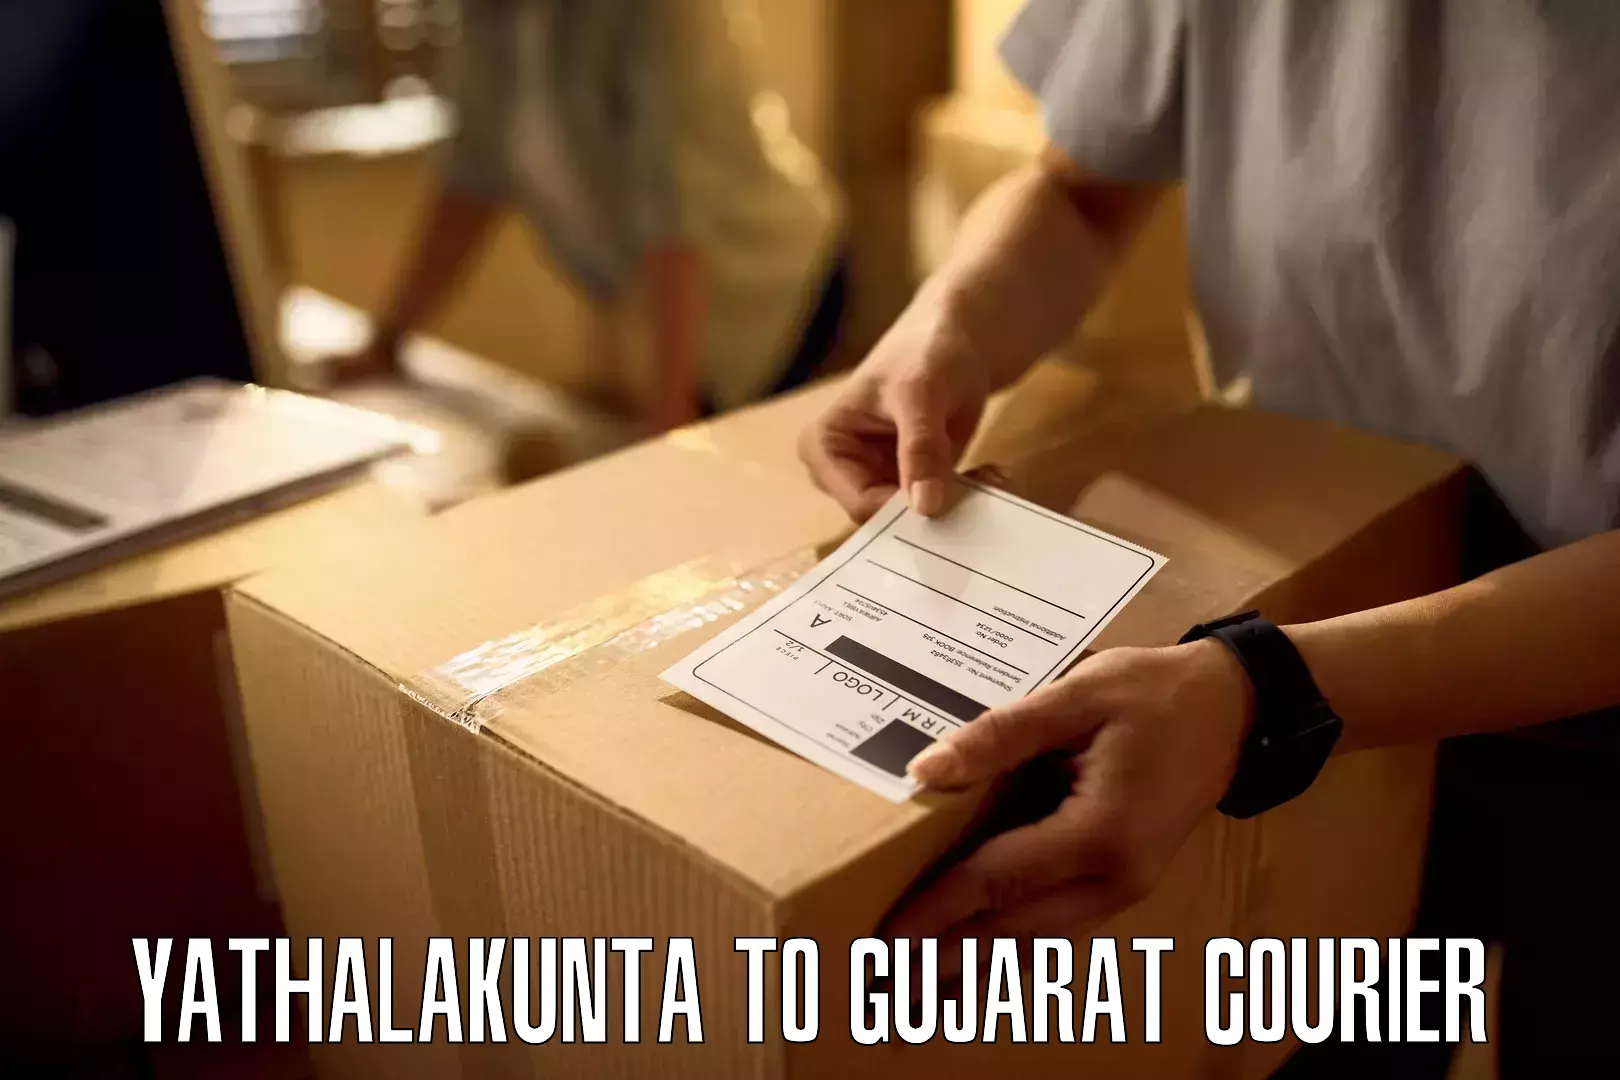 Discounted shipping Yathalakunta to Matar